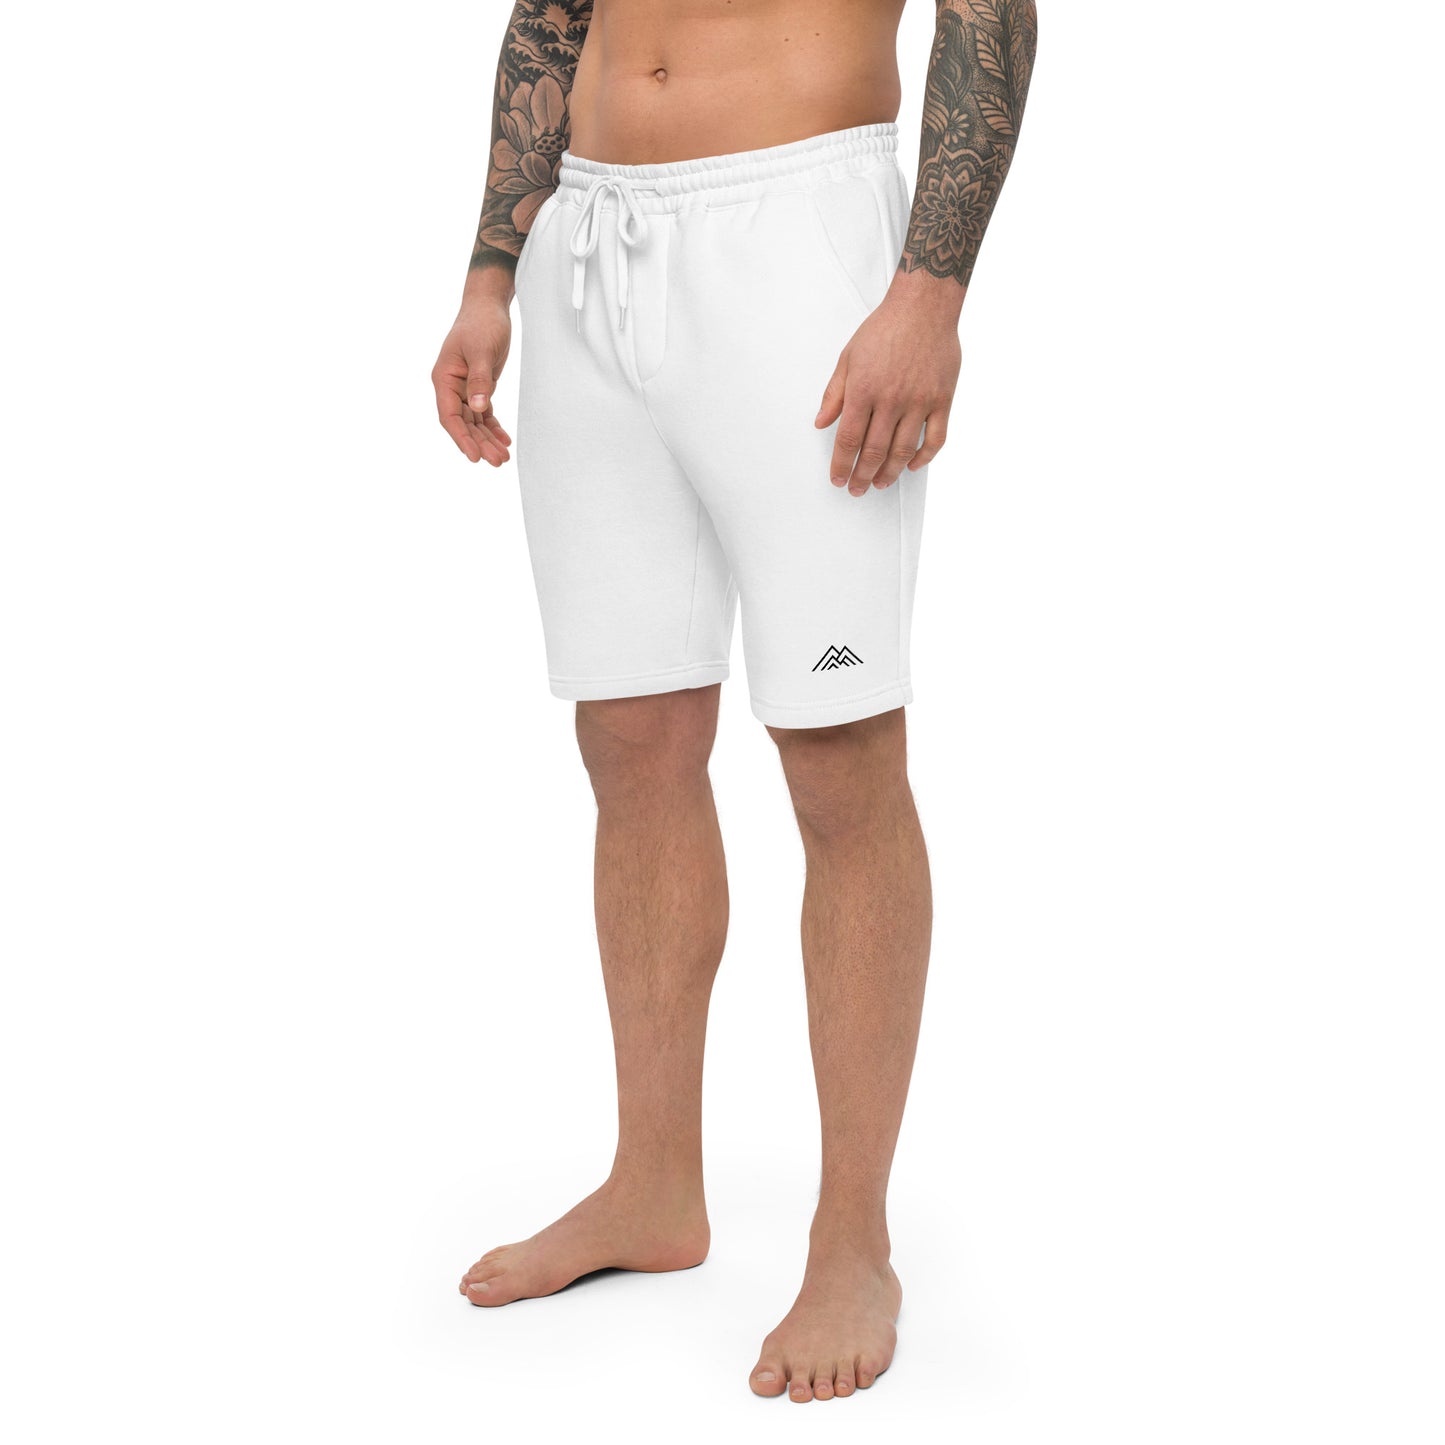 Men's fleece shorts (grey and white)